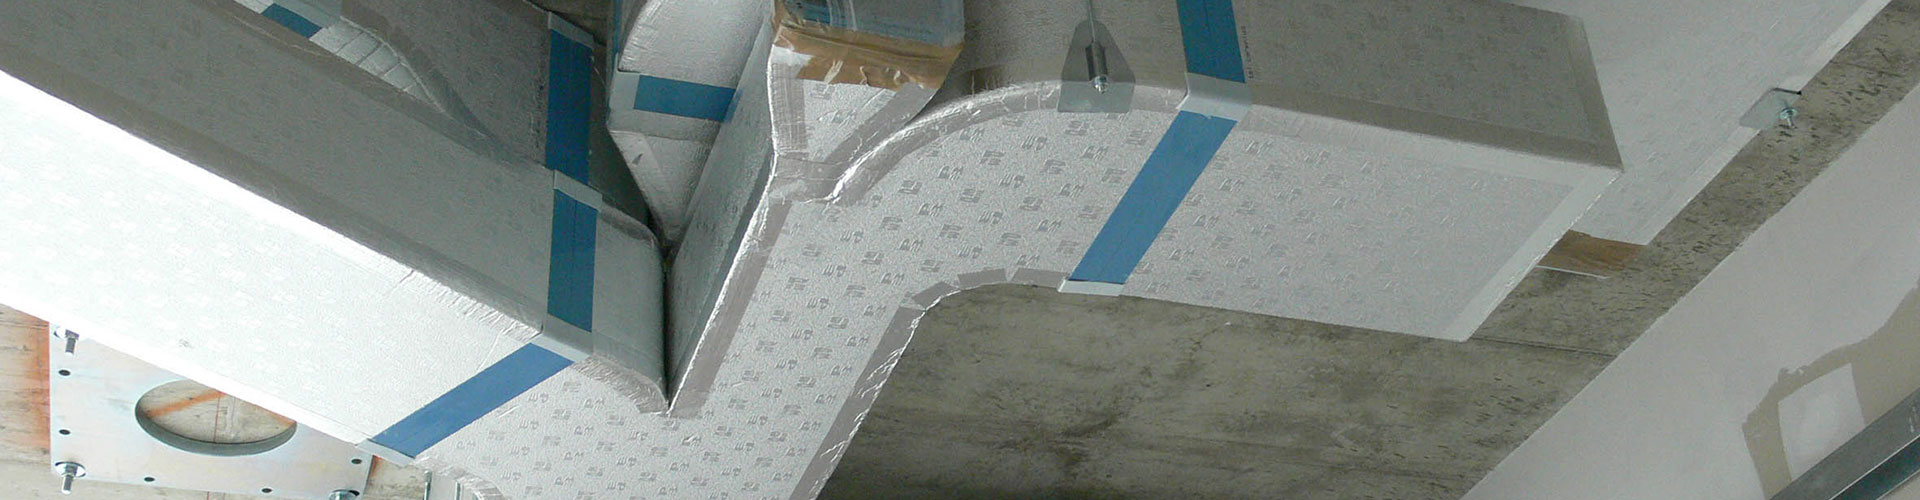 Pannelli in poliuretano espanso rigido con rivestimenti flessibili